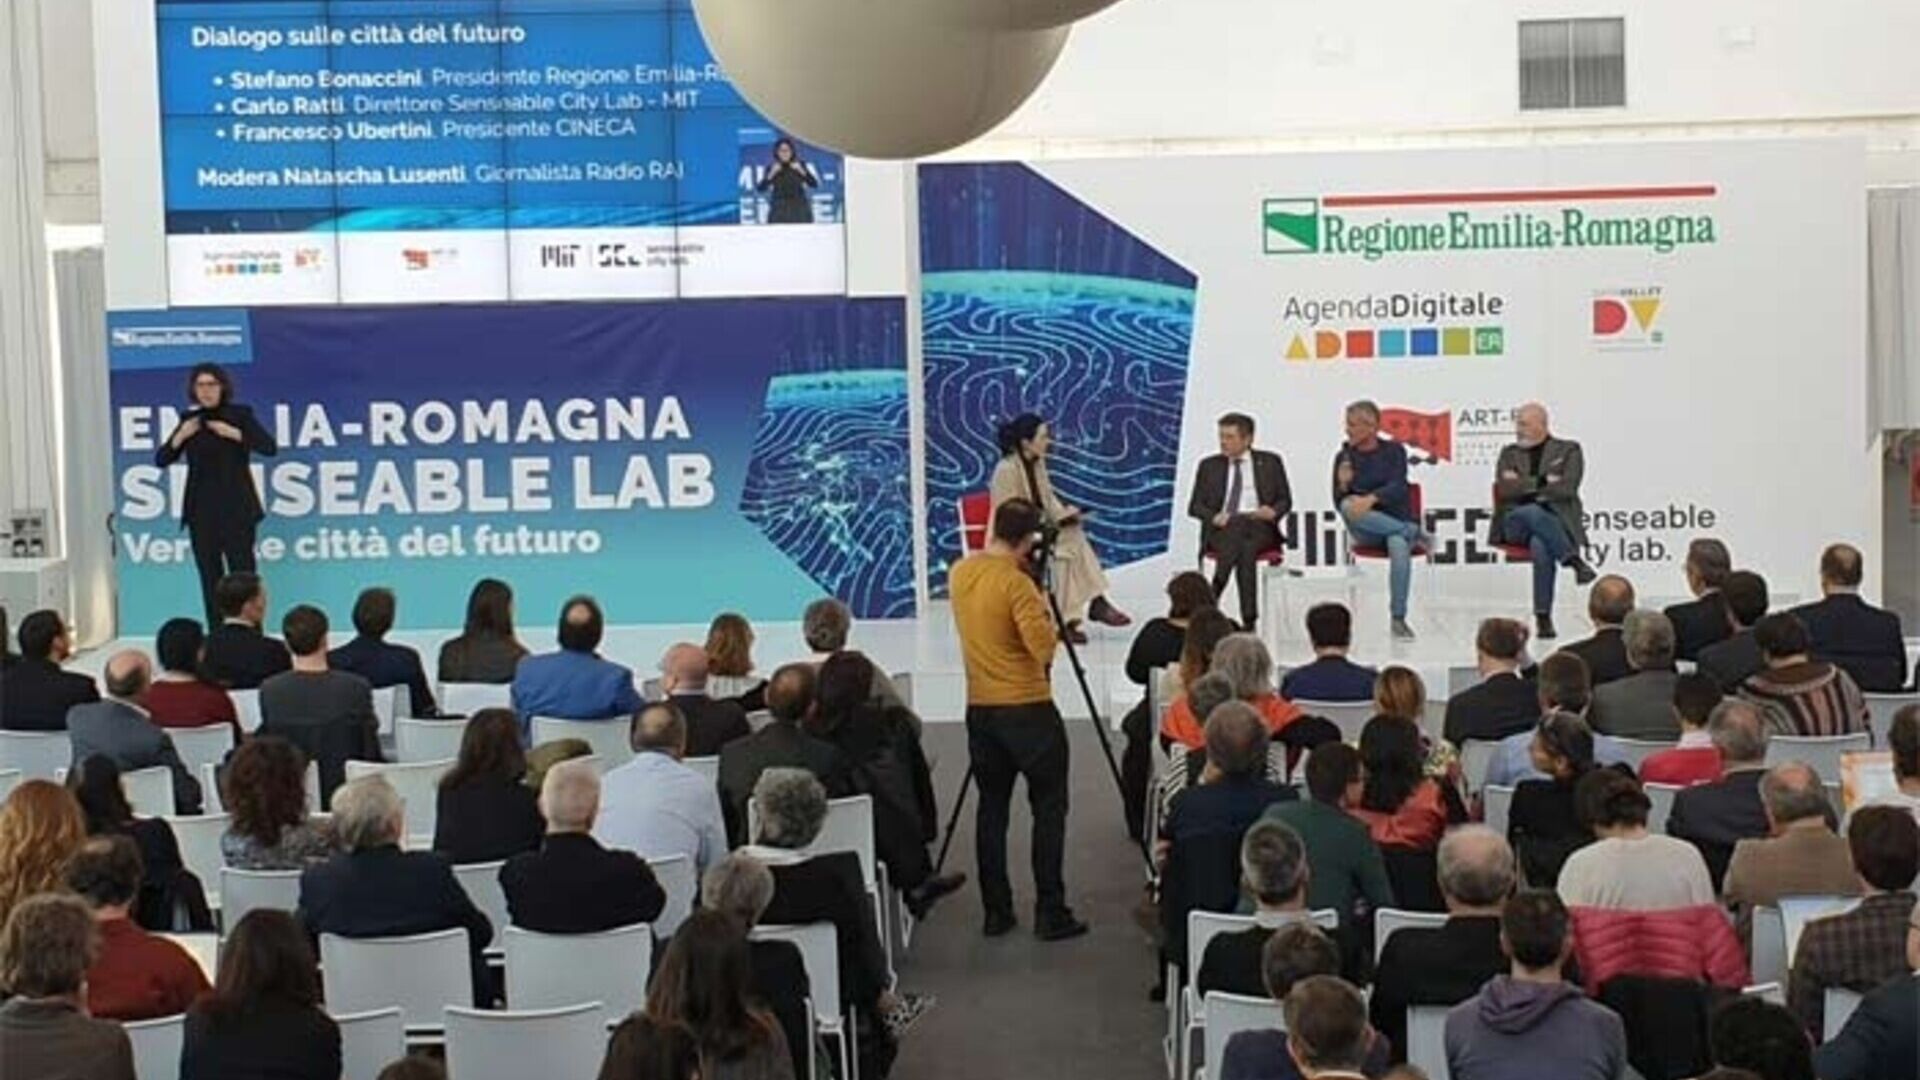 Массачусетський технологічний інститут: MIT Senseable City Lab прибуде до Bologna Tecnopolo, щоб уявити міста майбутнього завдяки співпраці з регіоном Емілія-Романья